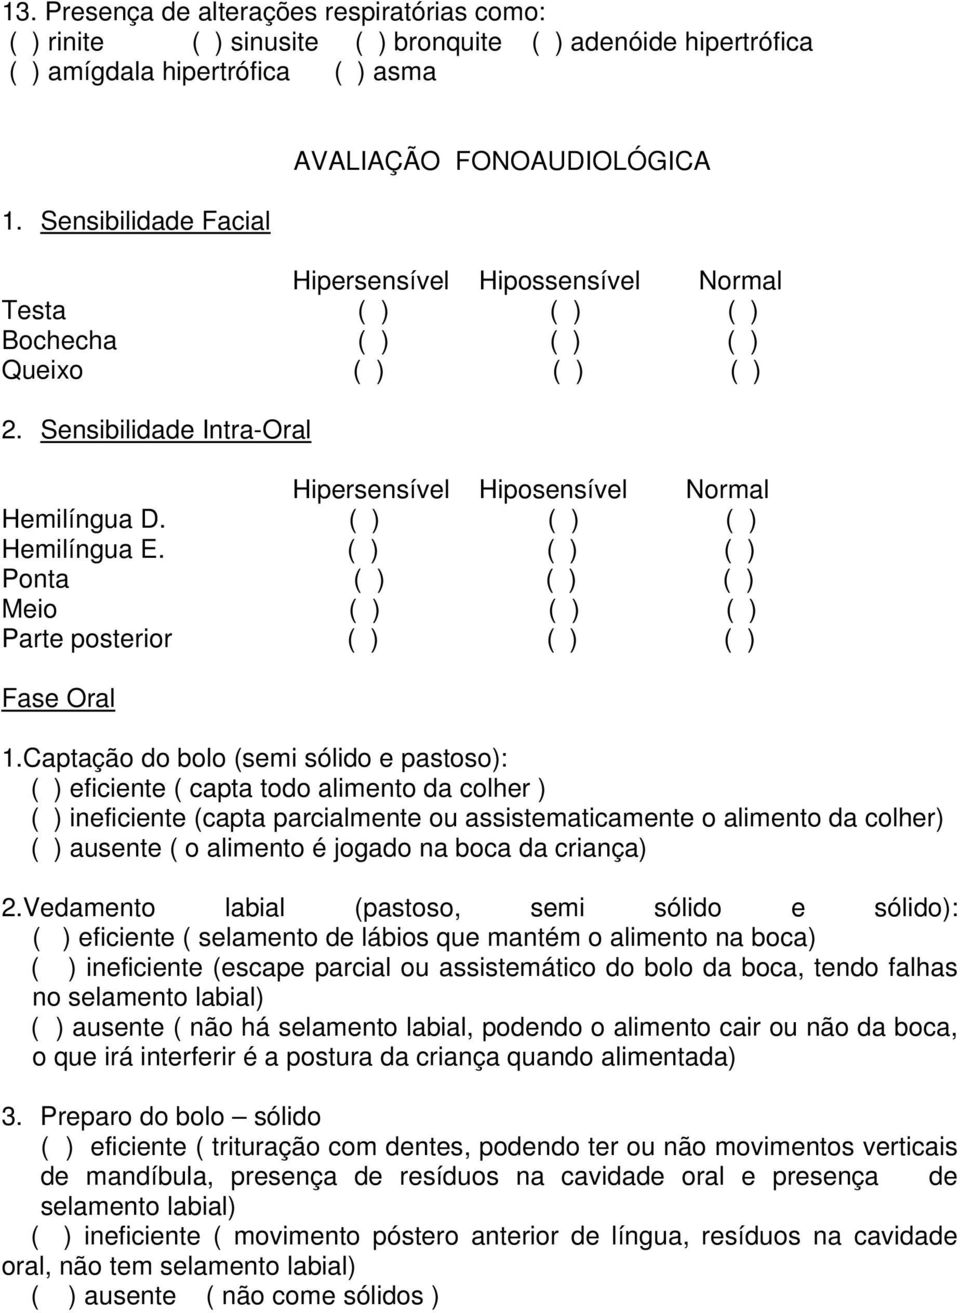 Sensibilidade Intra-Oral Hipersensível Hiposensível Normal Hemilíngua D. ( ) ( ) ( ) Hemilíngua E. ( ) ( ) ( ) Ponta ( ) ( ) ( ) Meio ( ) ( ) ( ) Parte posterior ( ) ( ) ( ) Fase Oral 1.